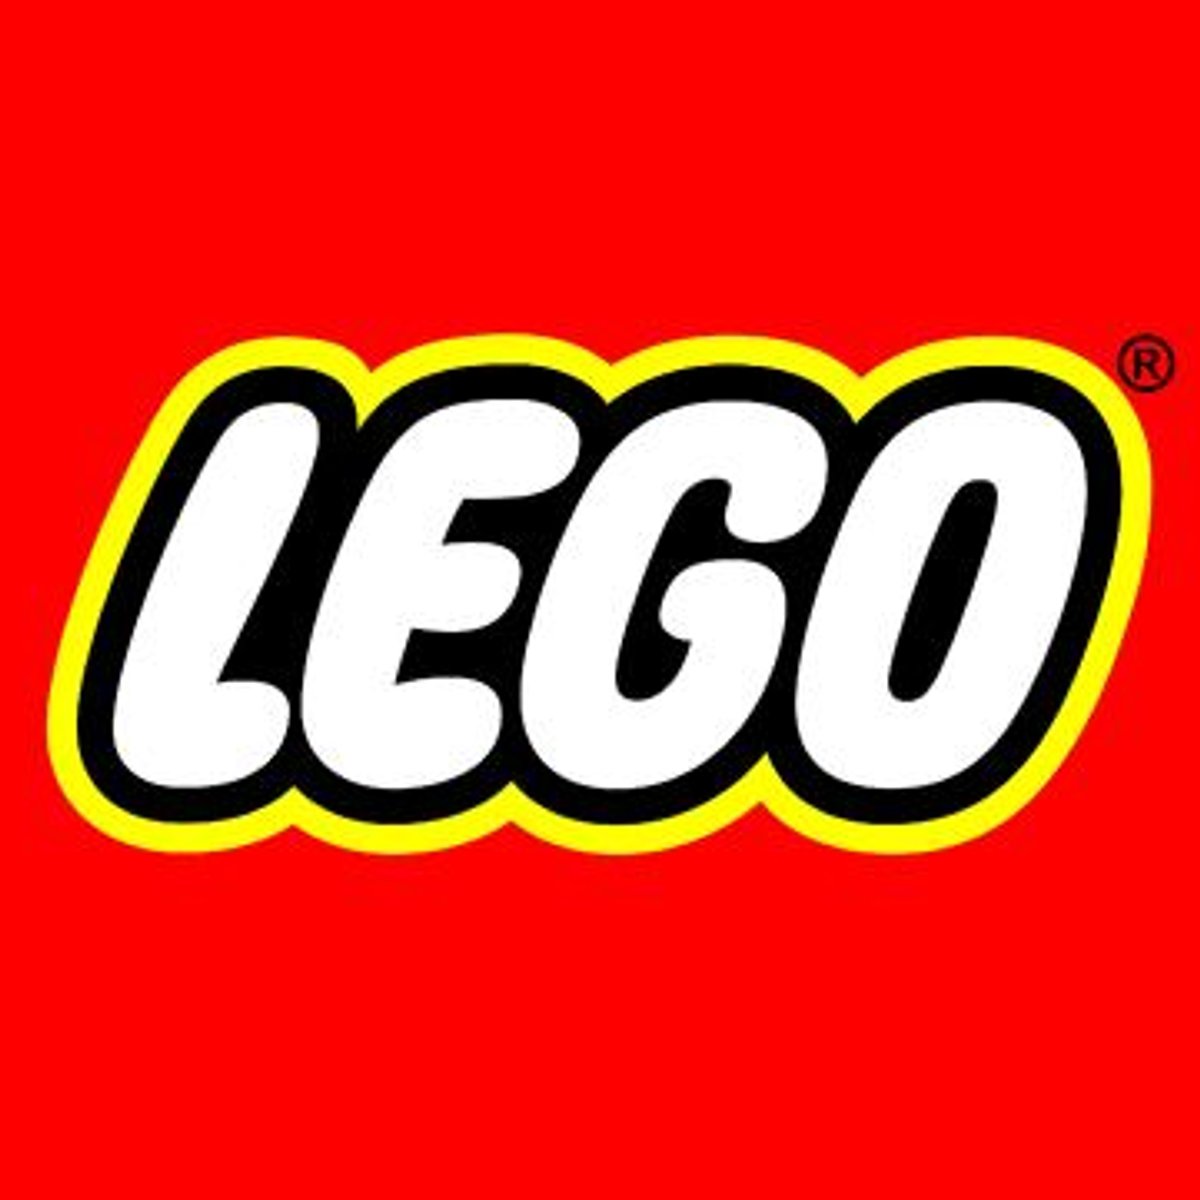 Gratis LEGO Ausmalbilder zum Herunterladen und Ausdrucken